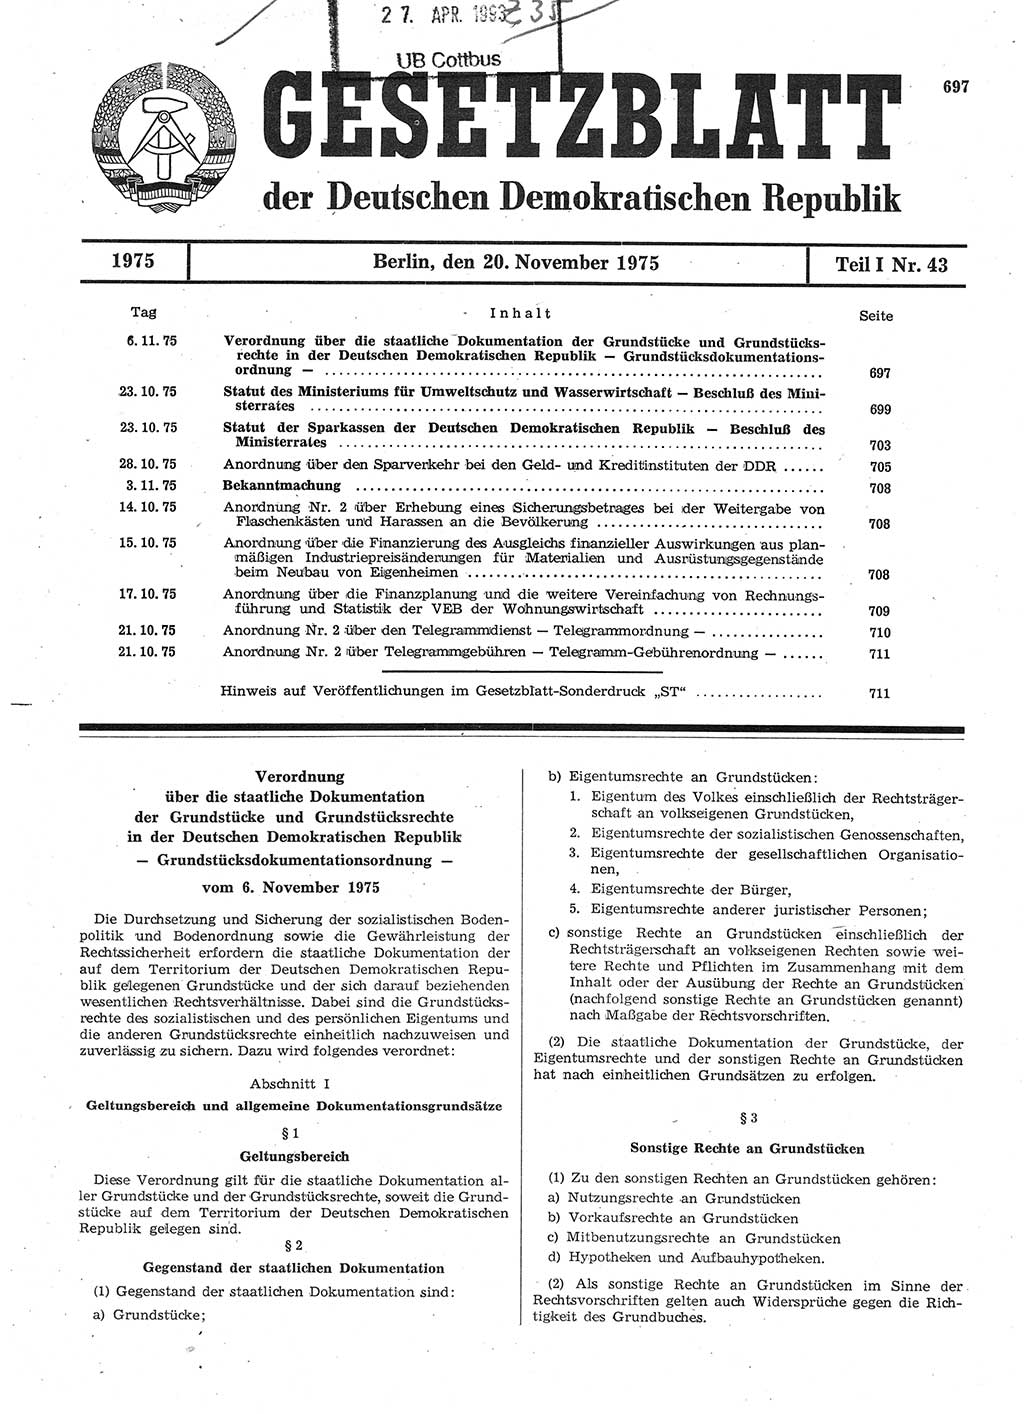 Gesetzblatt (GBl.) der Deutschen Demokratischen Republik (DDR) Teil Ⅰ 1975, Seite 697 (GBl. DDR Ⅰ 1975, S. 697)